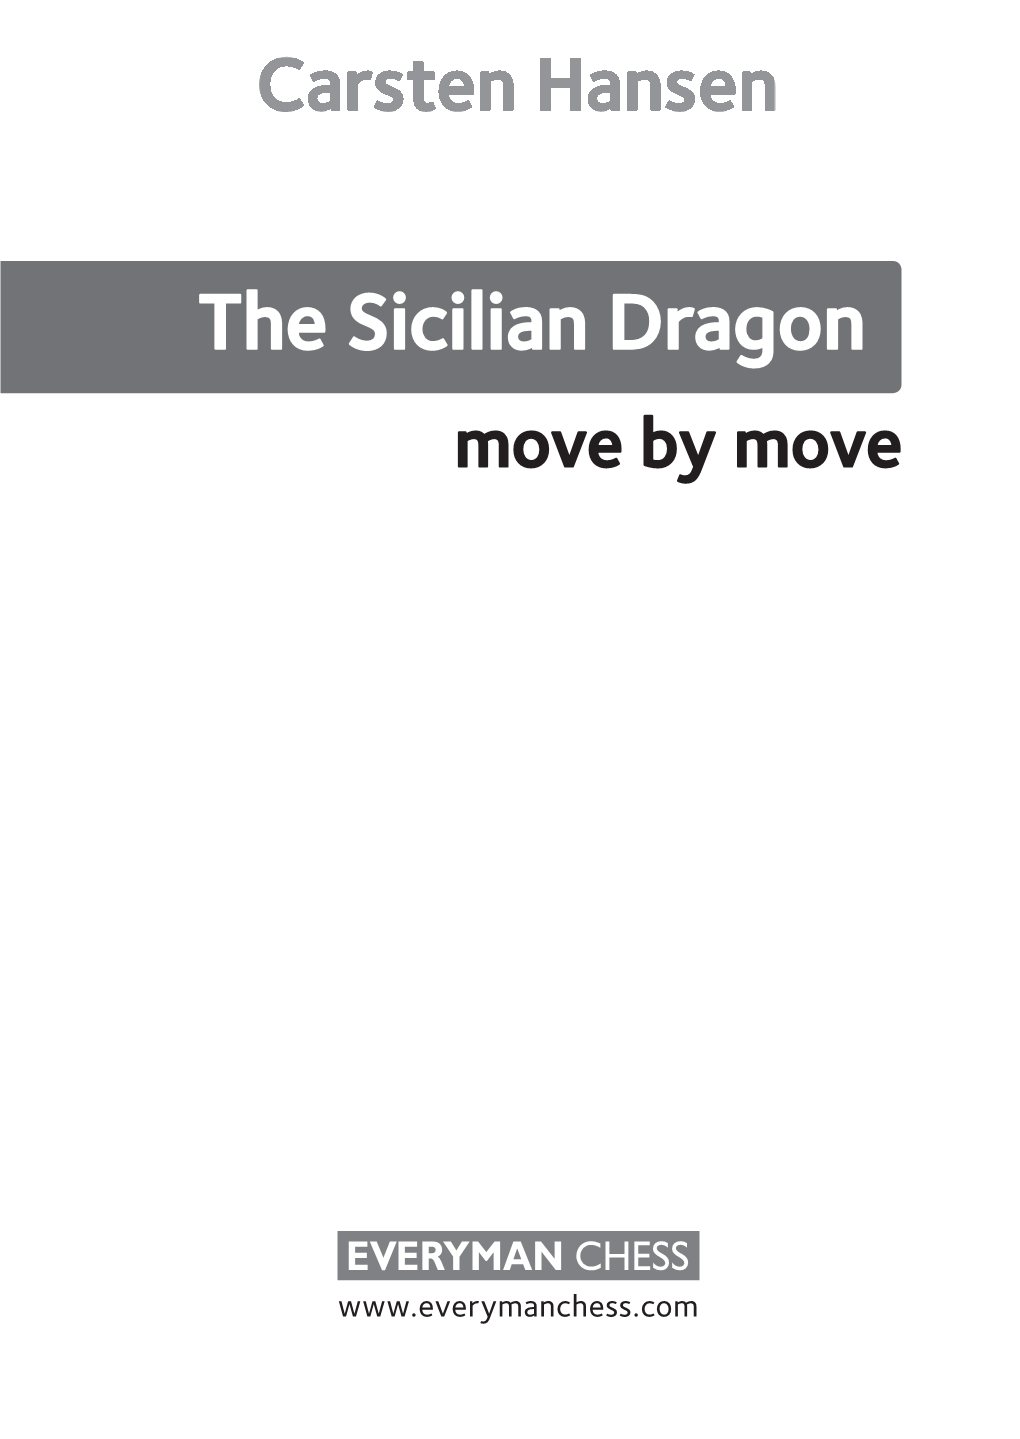 The Sicilian Dragon Move by Move